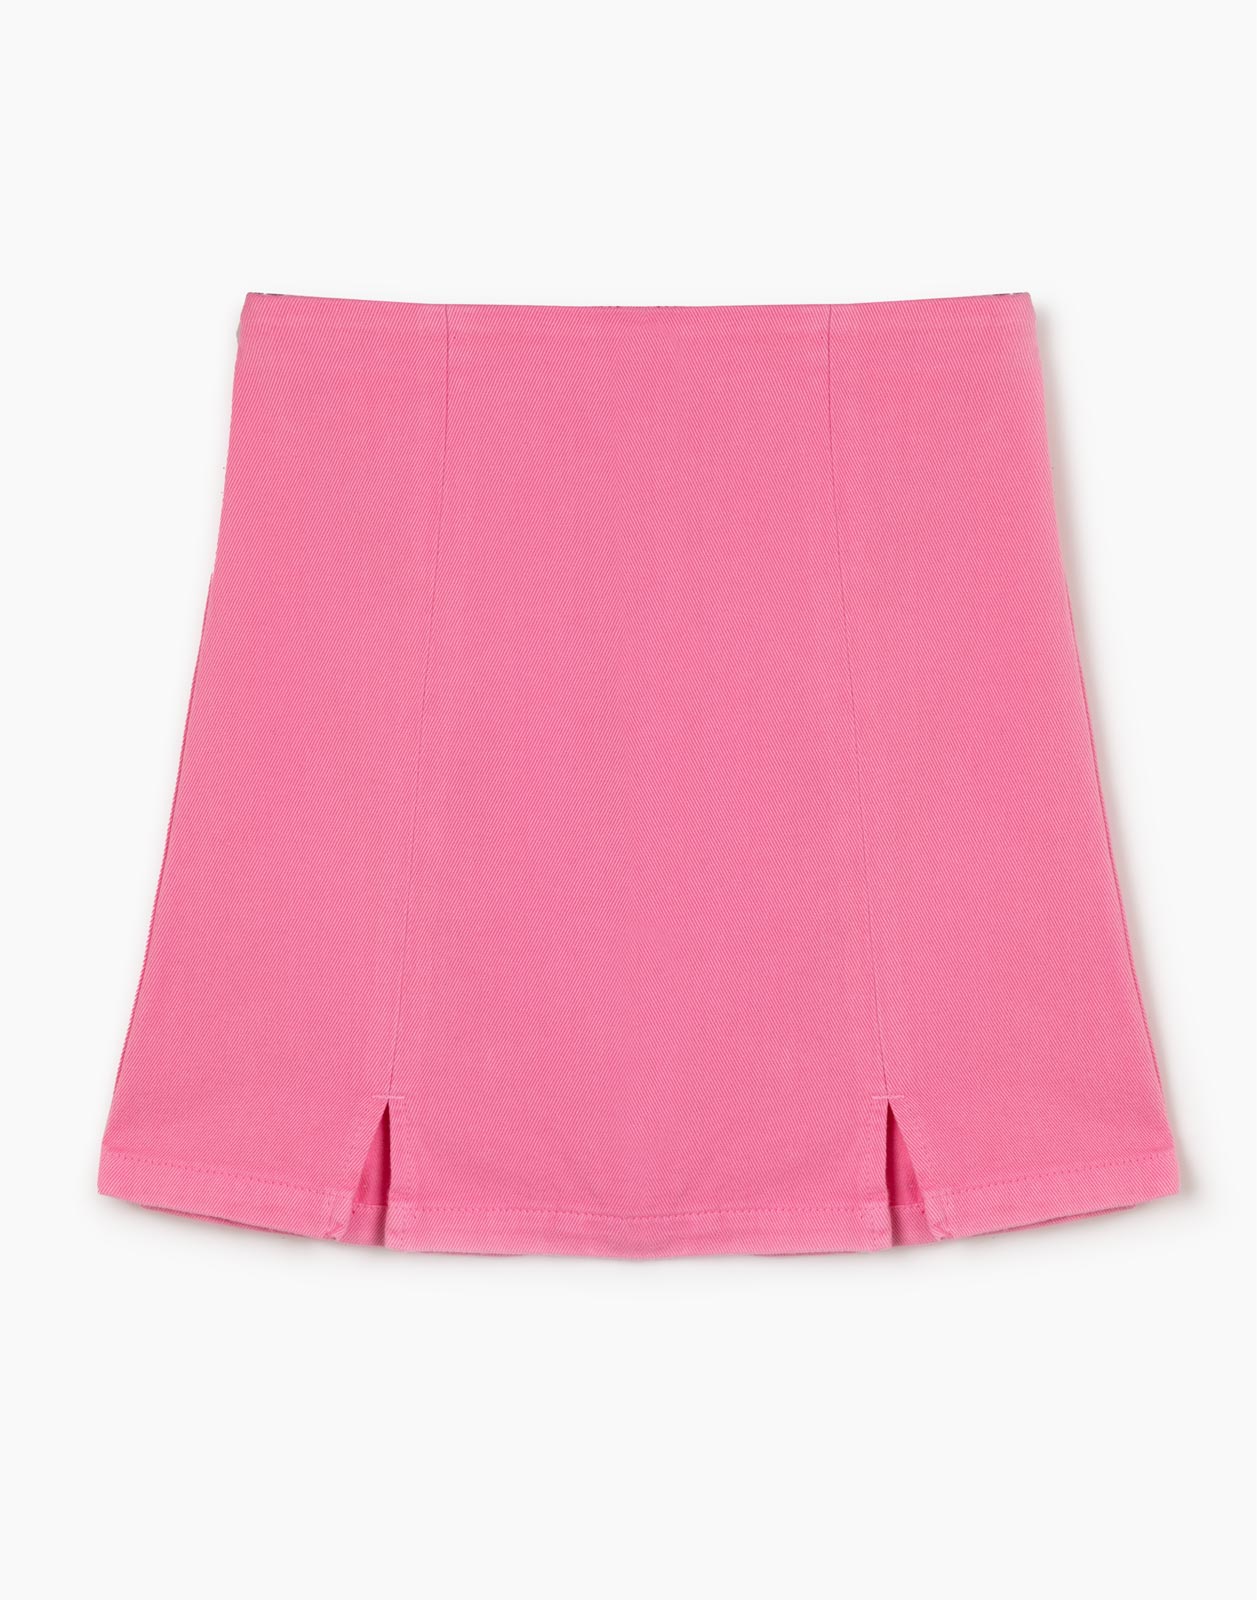 Розовая джинсовая юбка для девочки р.116